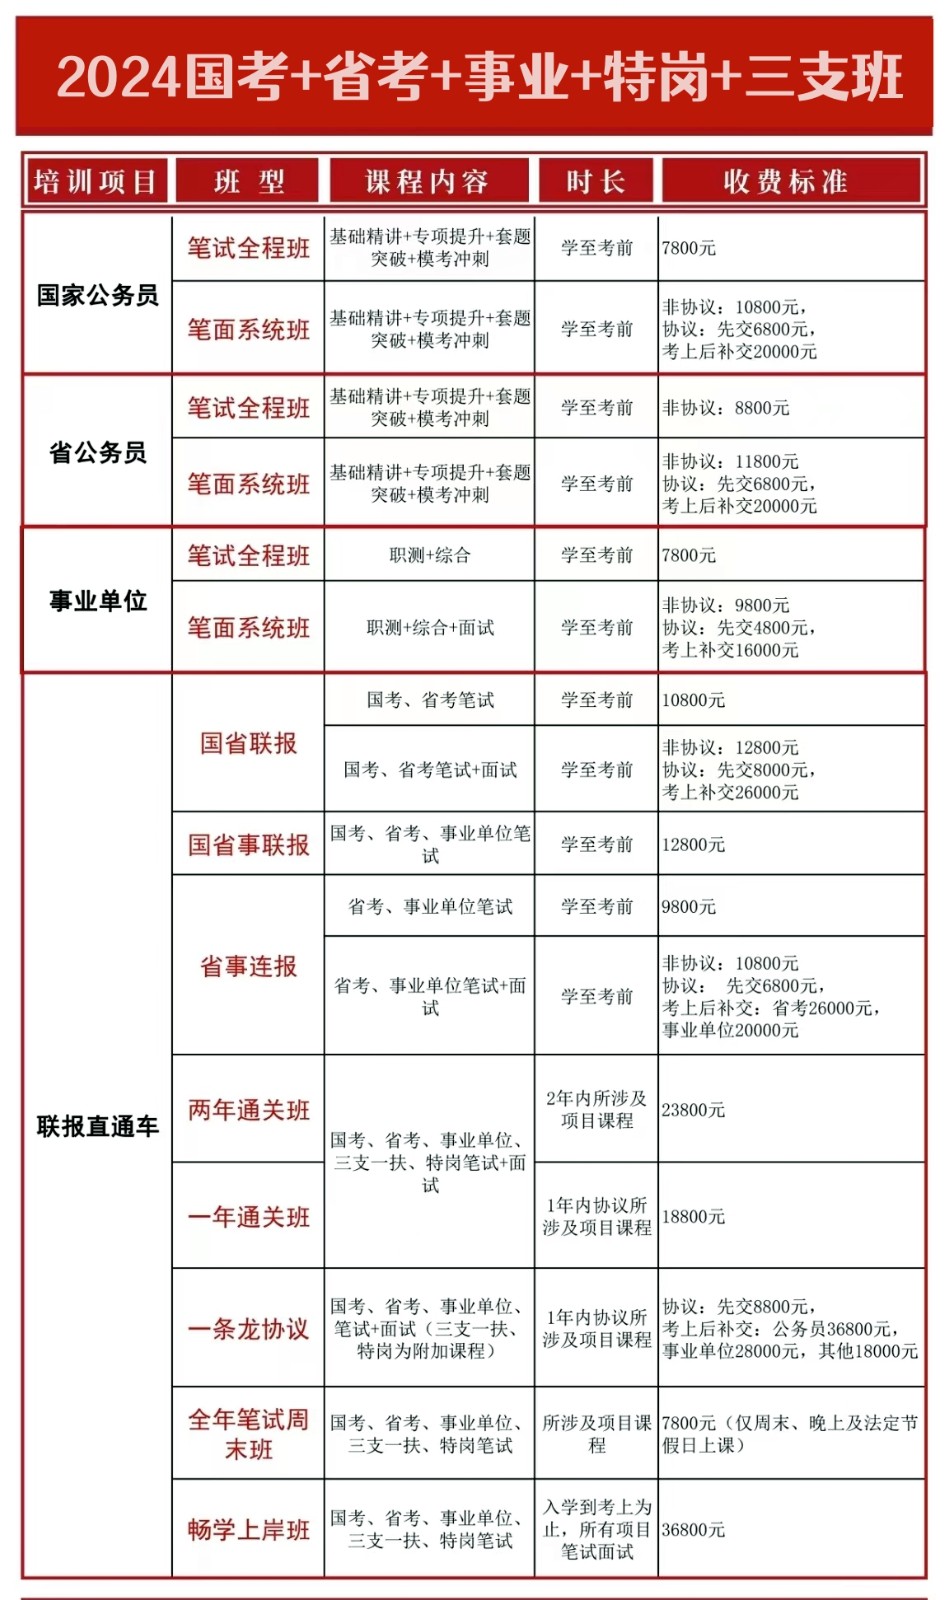 中志教育2024年省考笔试培班